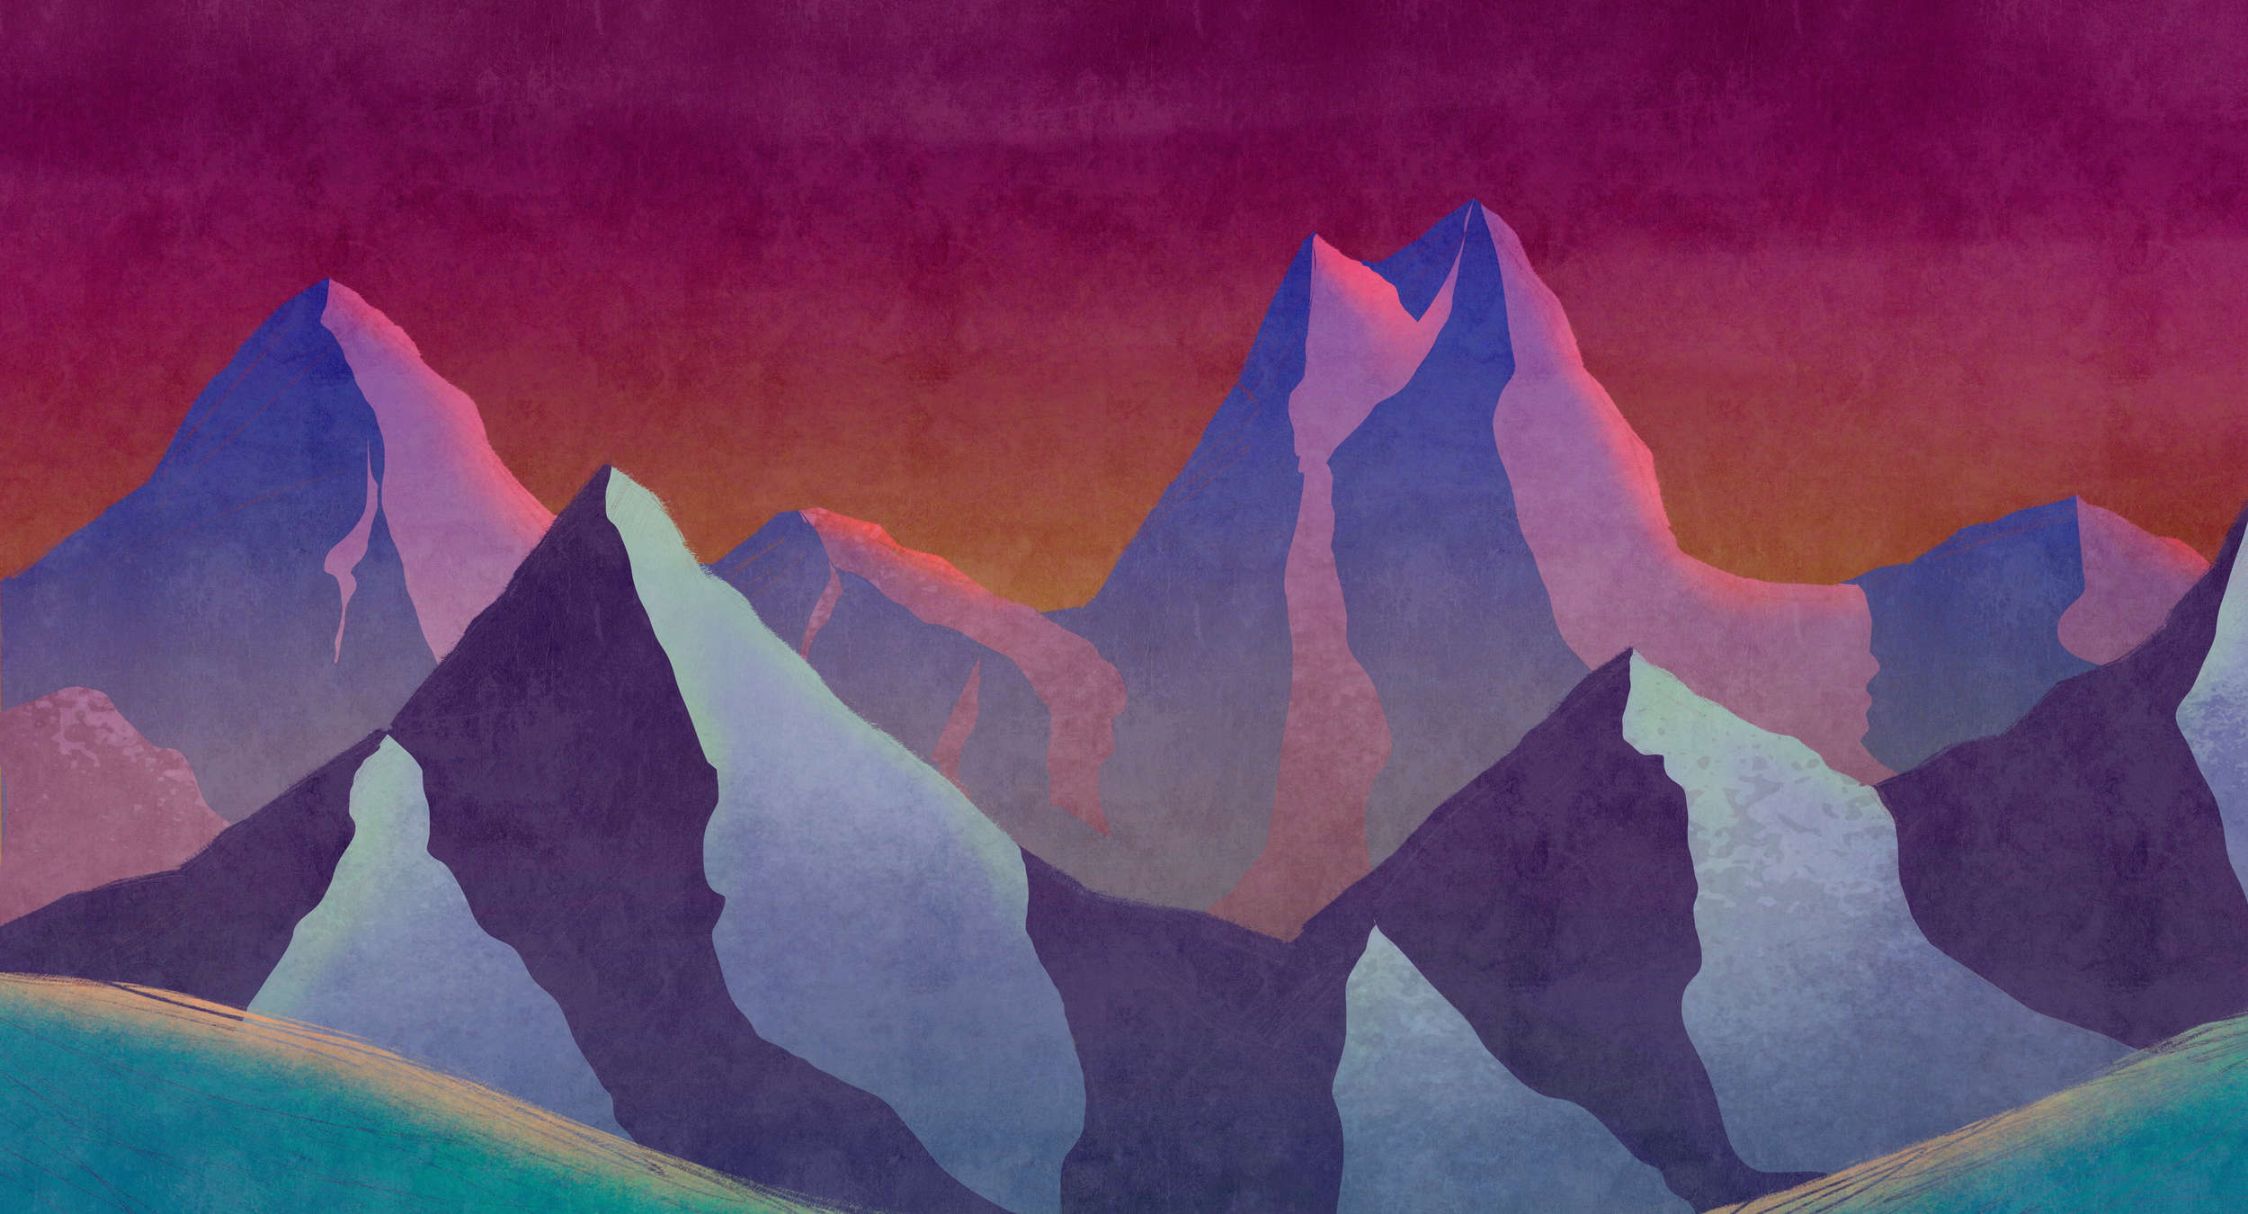             Fototapete »altitude 1« - Abstraktes Gebirge in Neonfarben mit Vintage Putzstruktur – Leicht strukturiertes Vlies
        